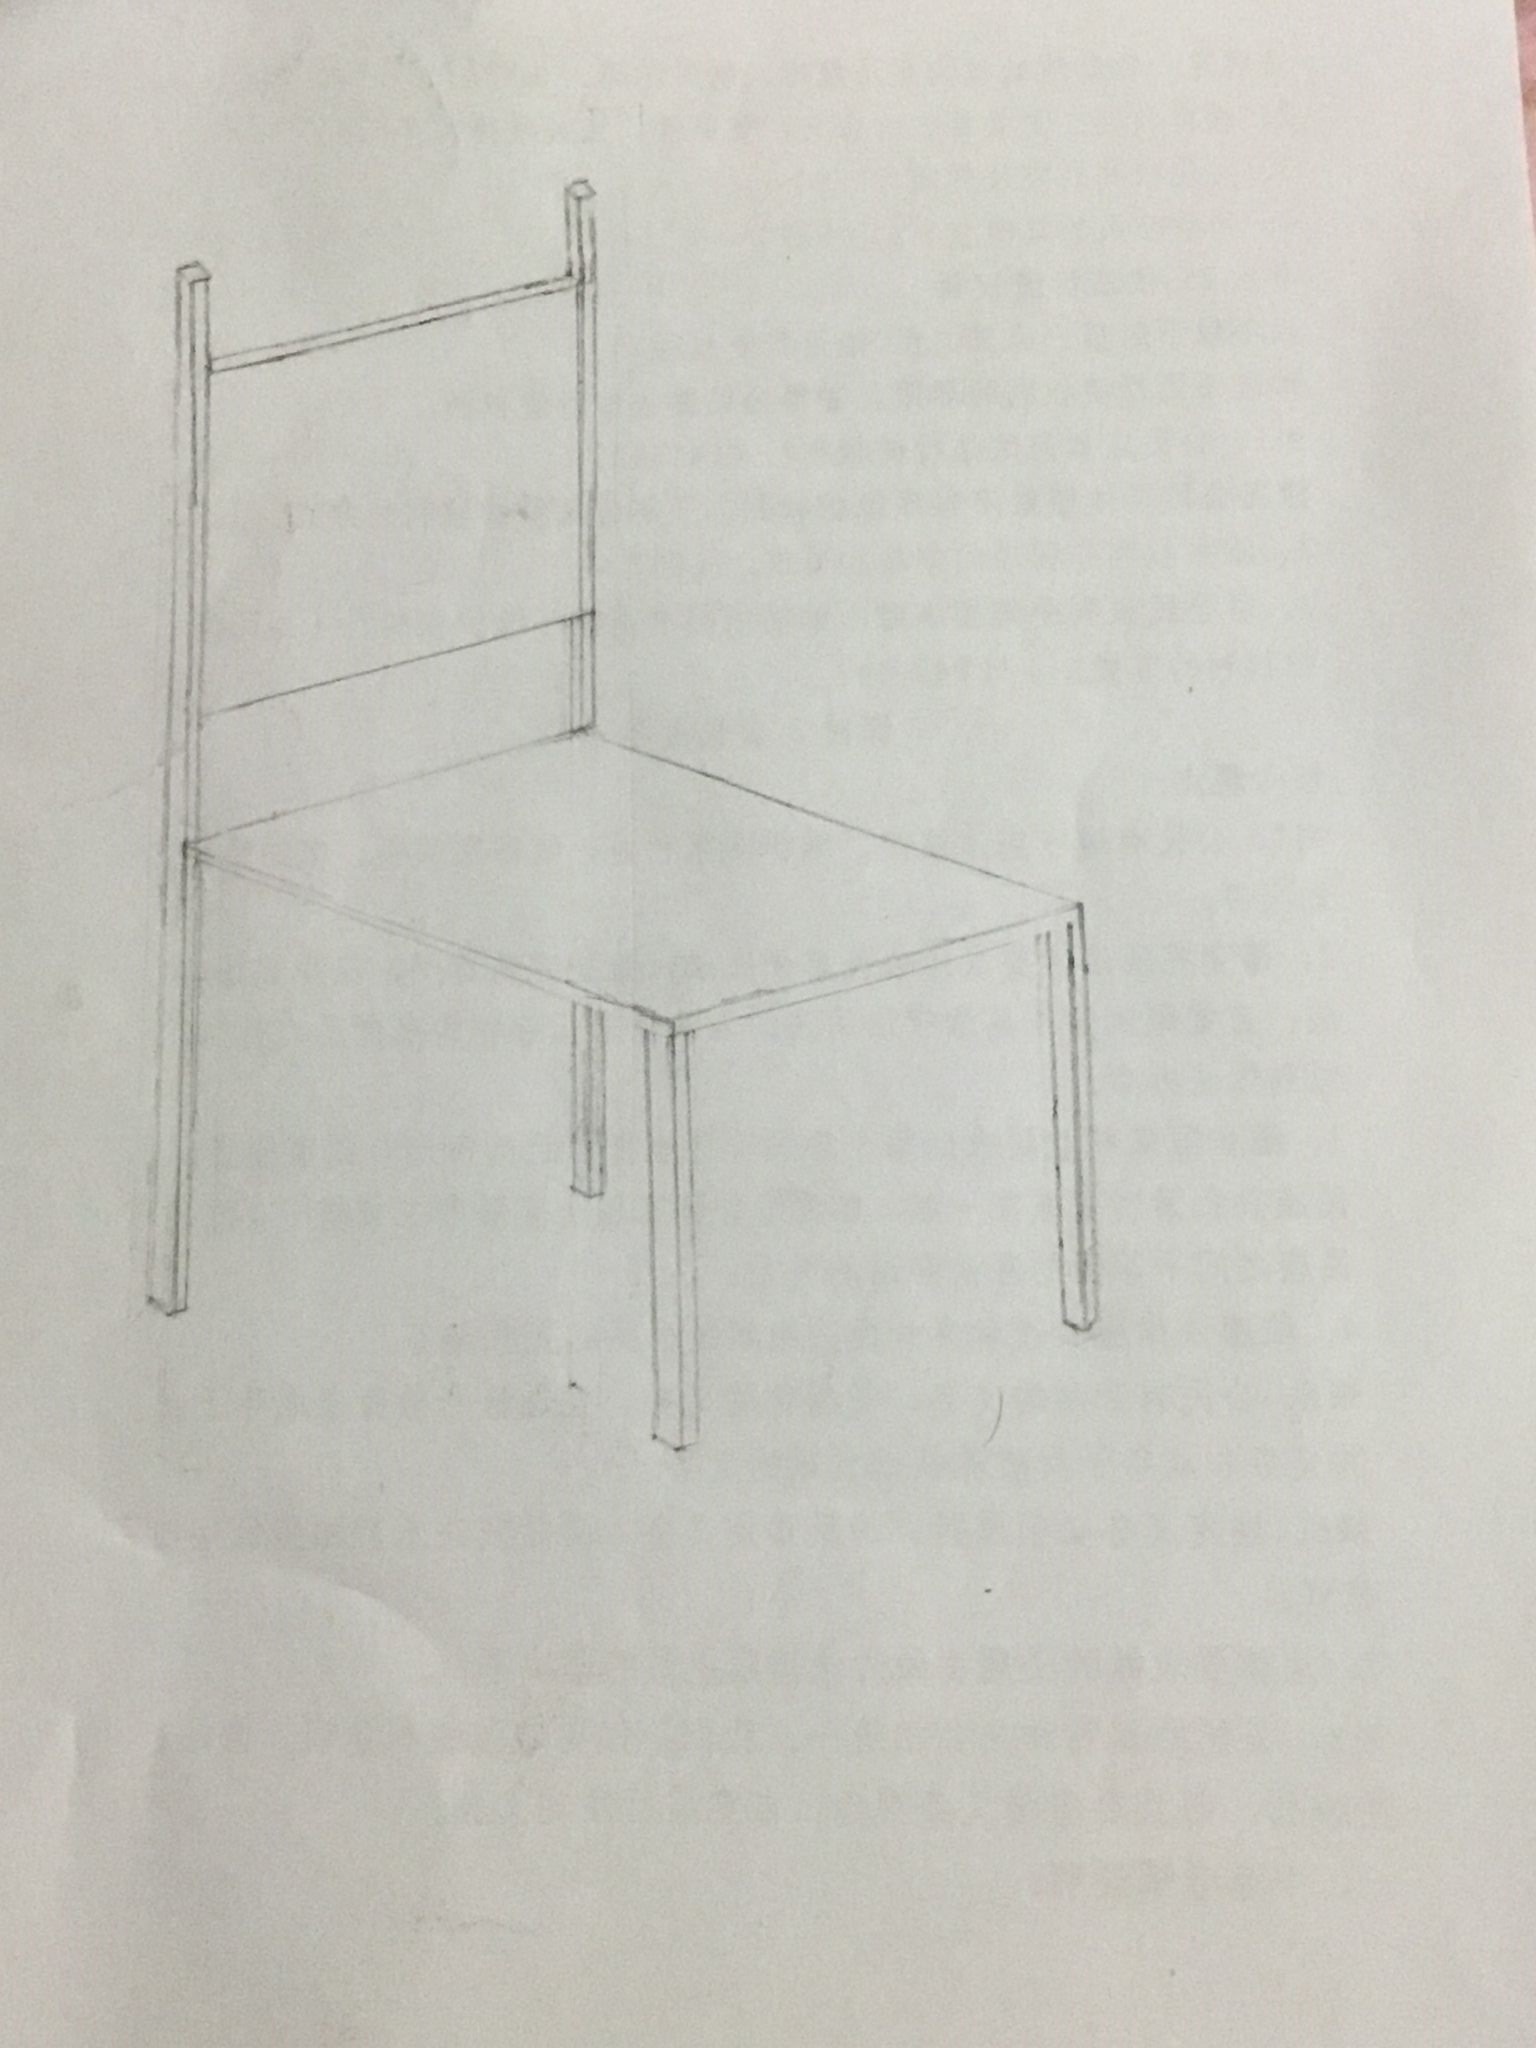 我画了一个椅子,如有不足之处请指出